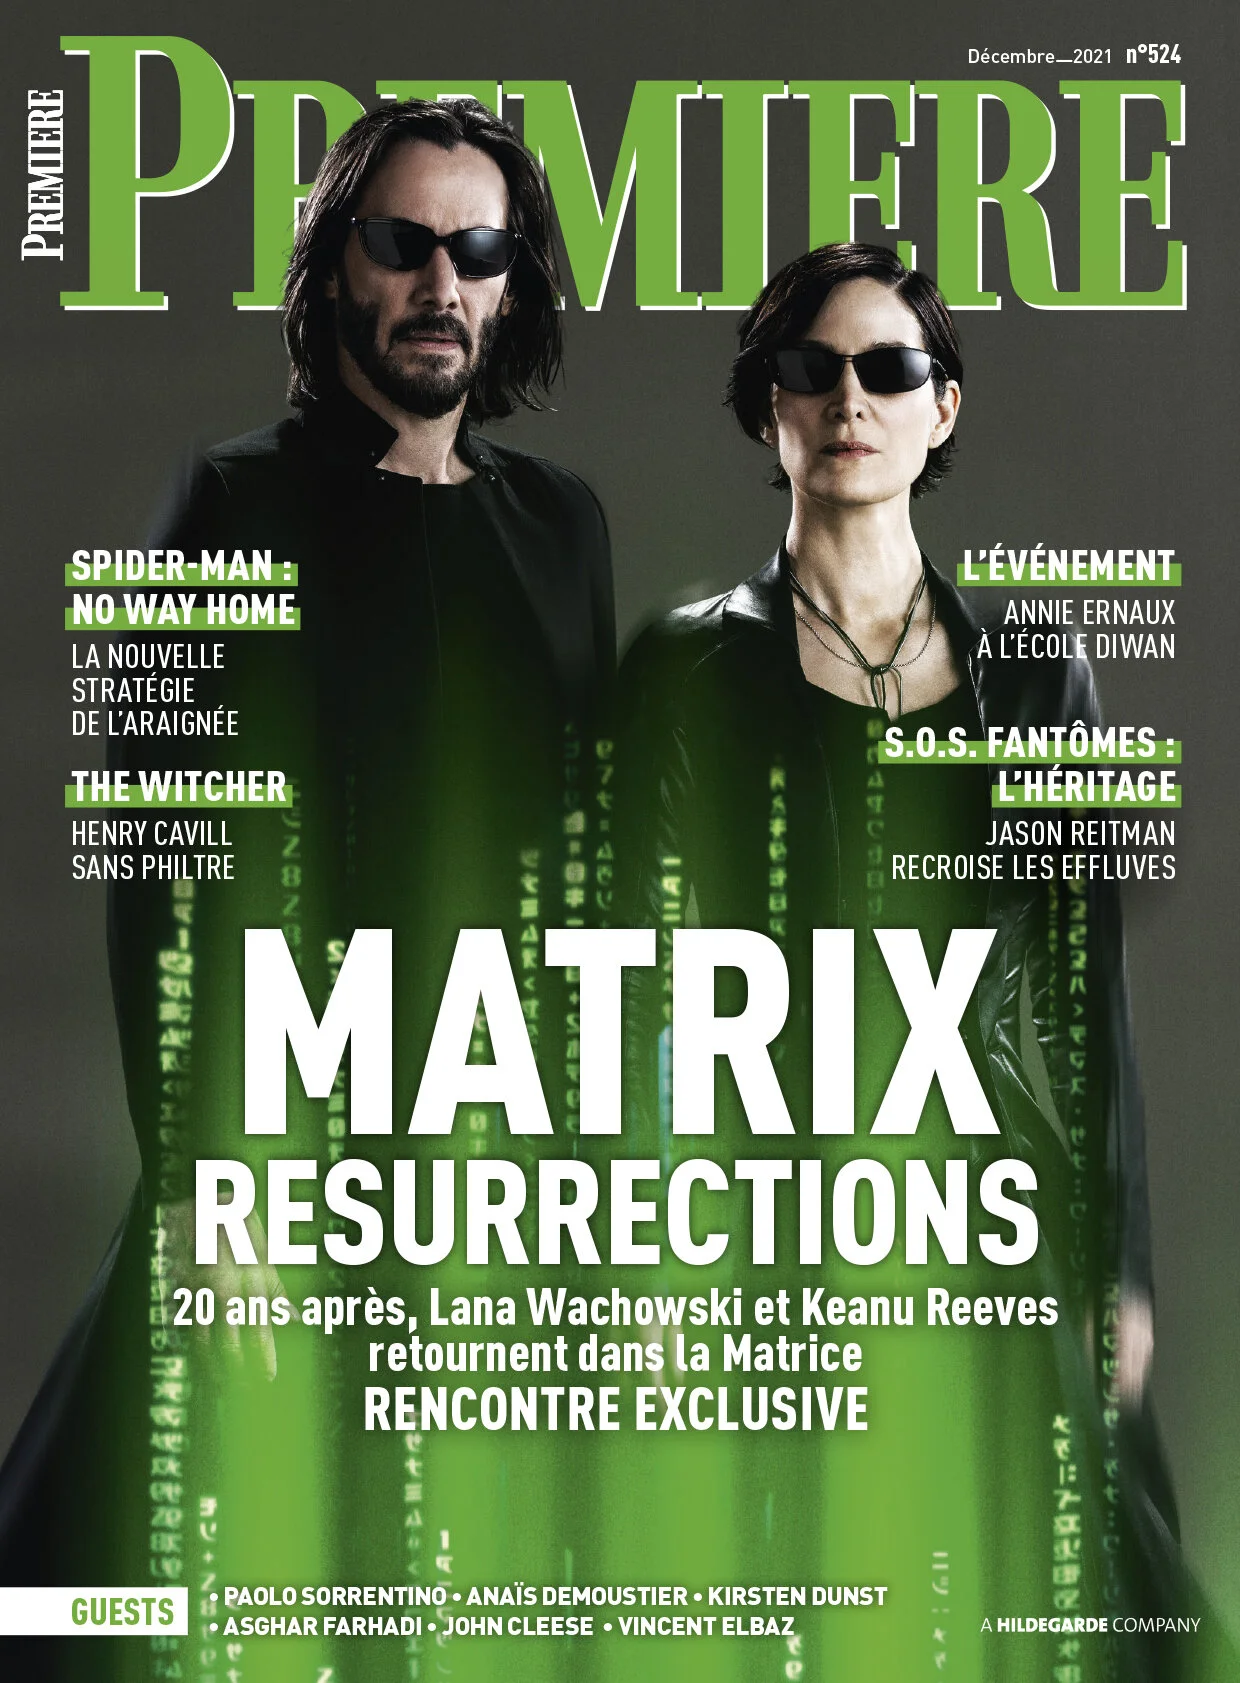 Киану Ривз и Керри-Энн Мосс предстали в образах из «Матрицы» на обложке Premiere - фото 1